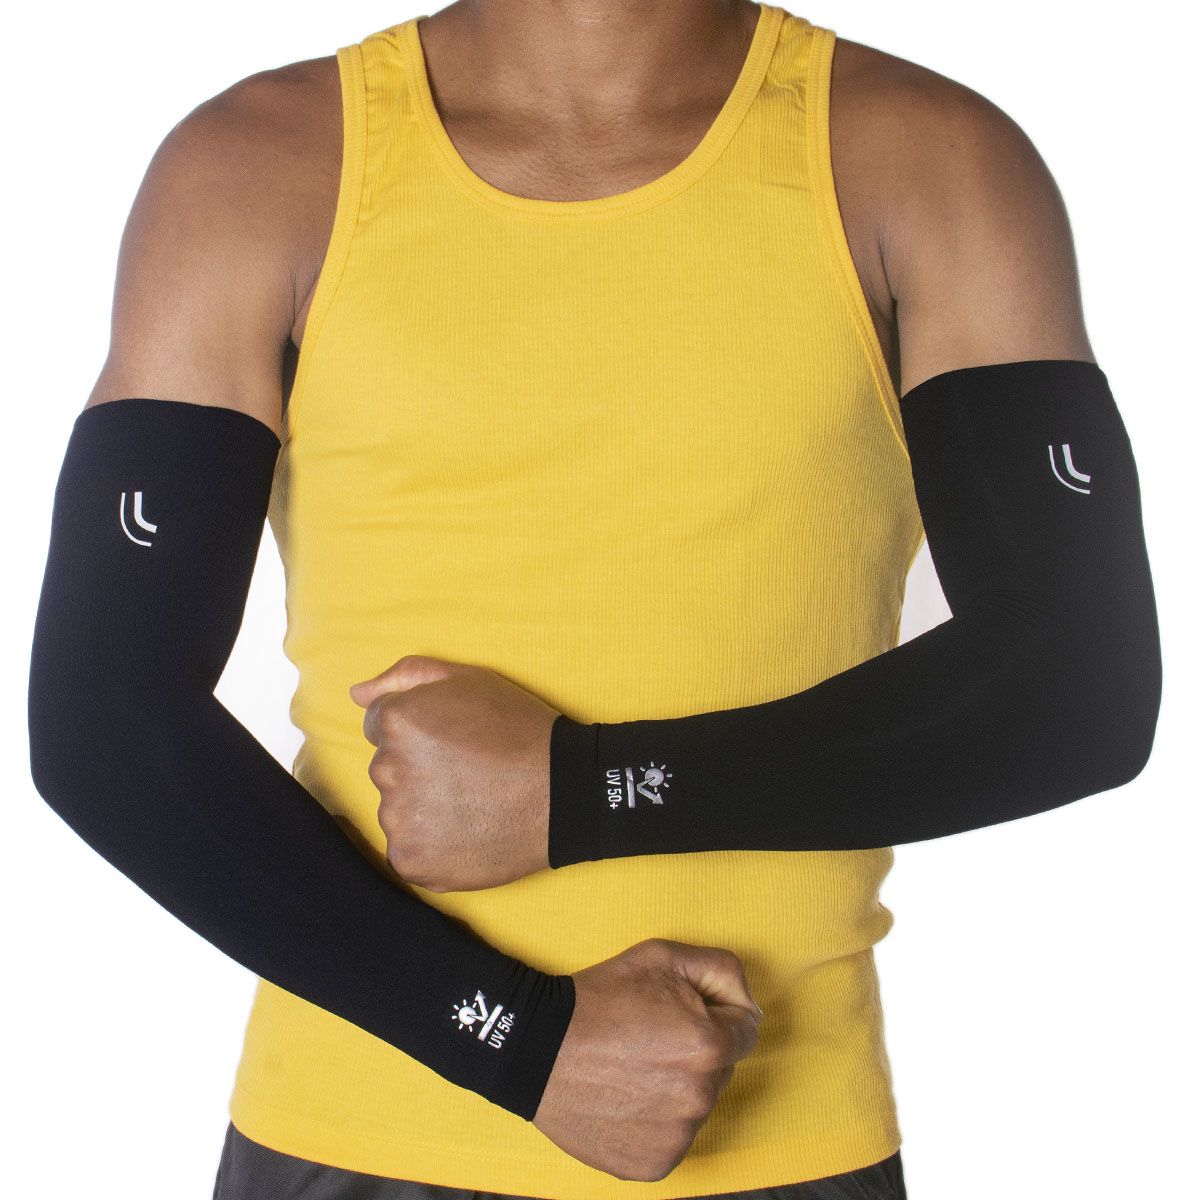 Manguito unissex Lupo proteção de braço para esportes Lupo - Bra Lingerie